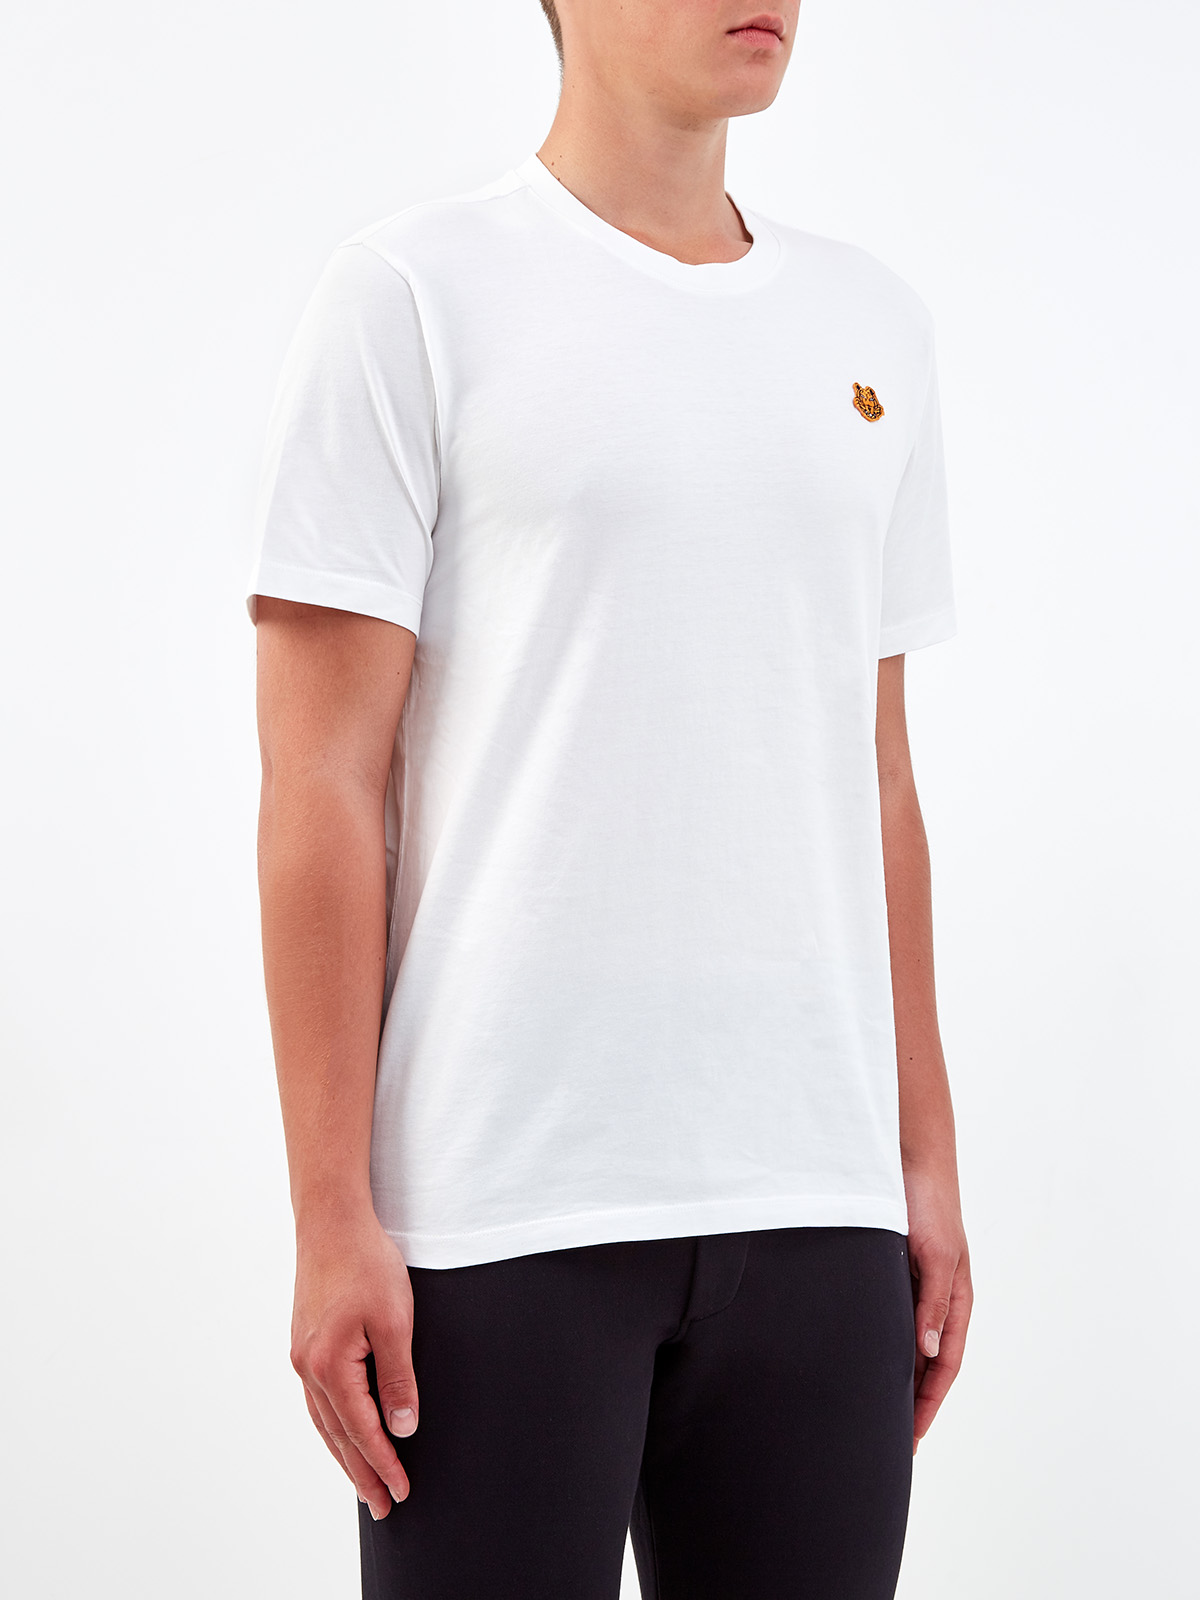 Хлопковая футболка с логотипом-аппликацией KENZO, цвет белый, размер S;M;XL;L - фото 3